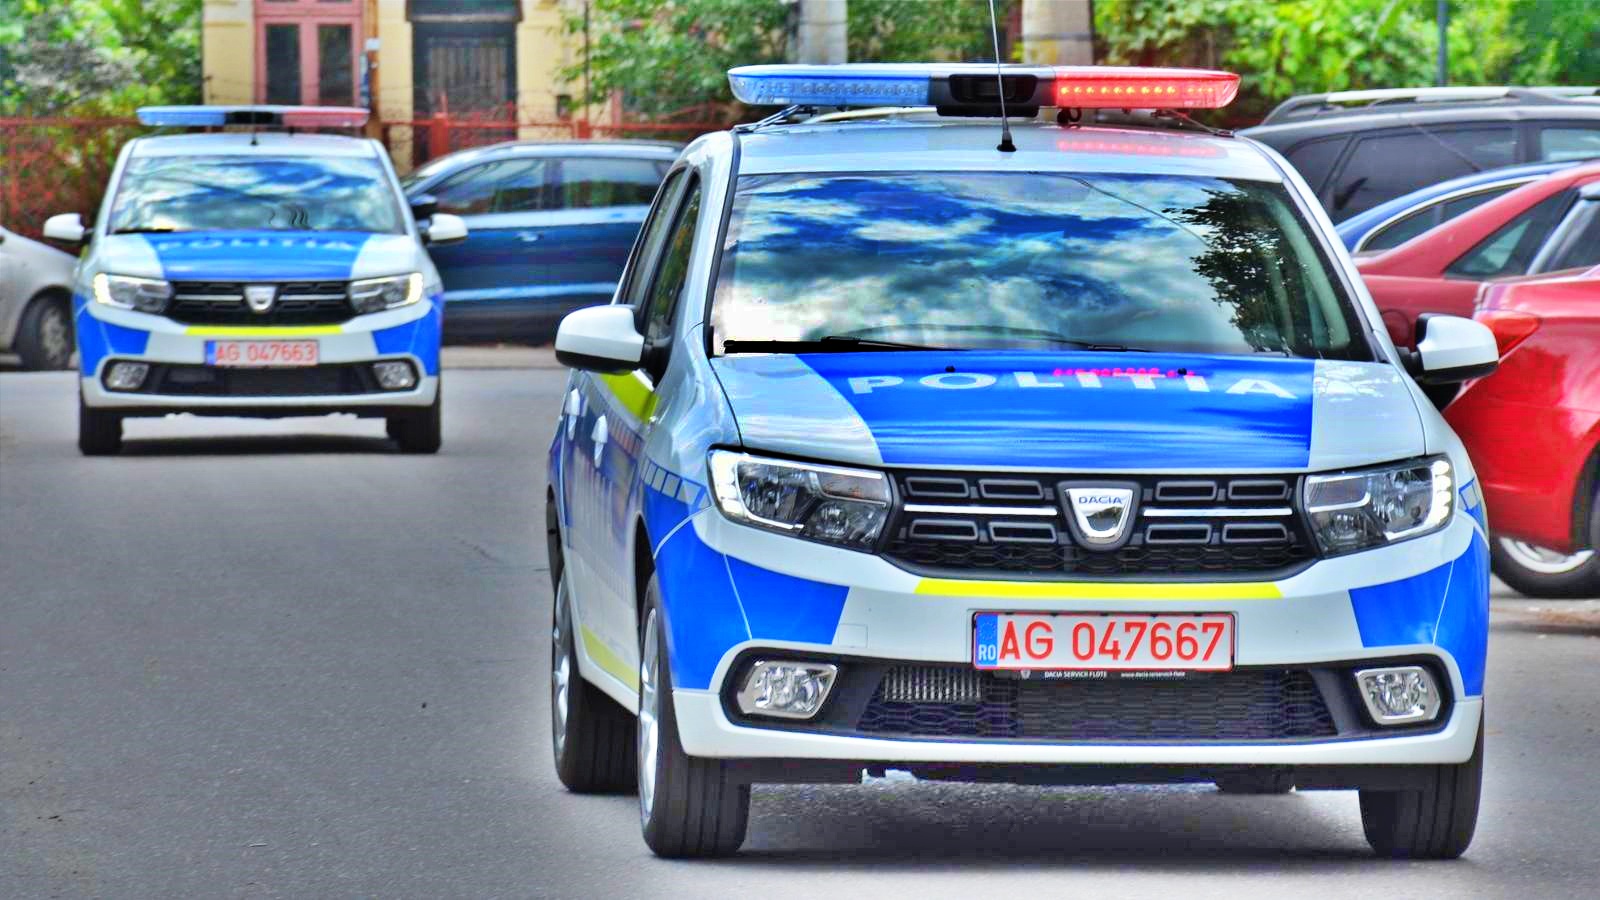 De Roemeense politie begint met het bestraffen van agressief verkeersgedrag